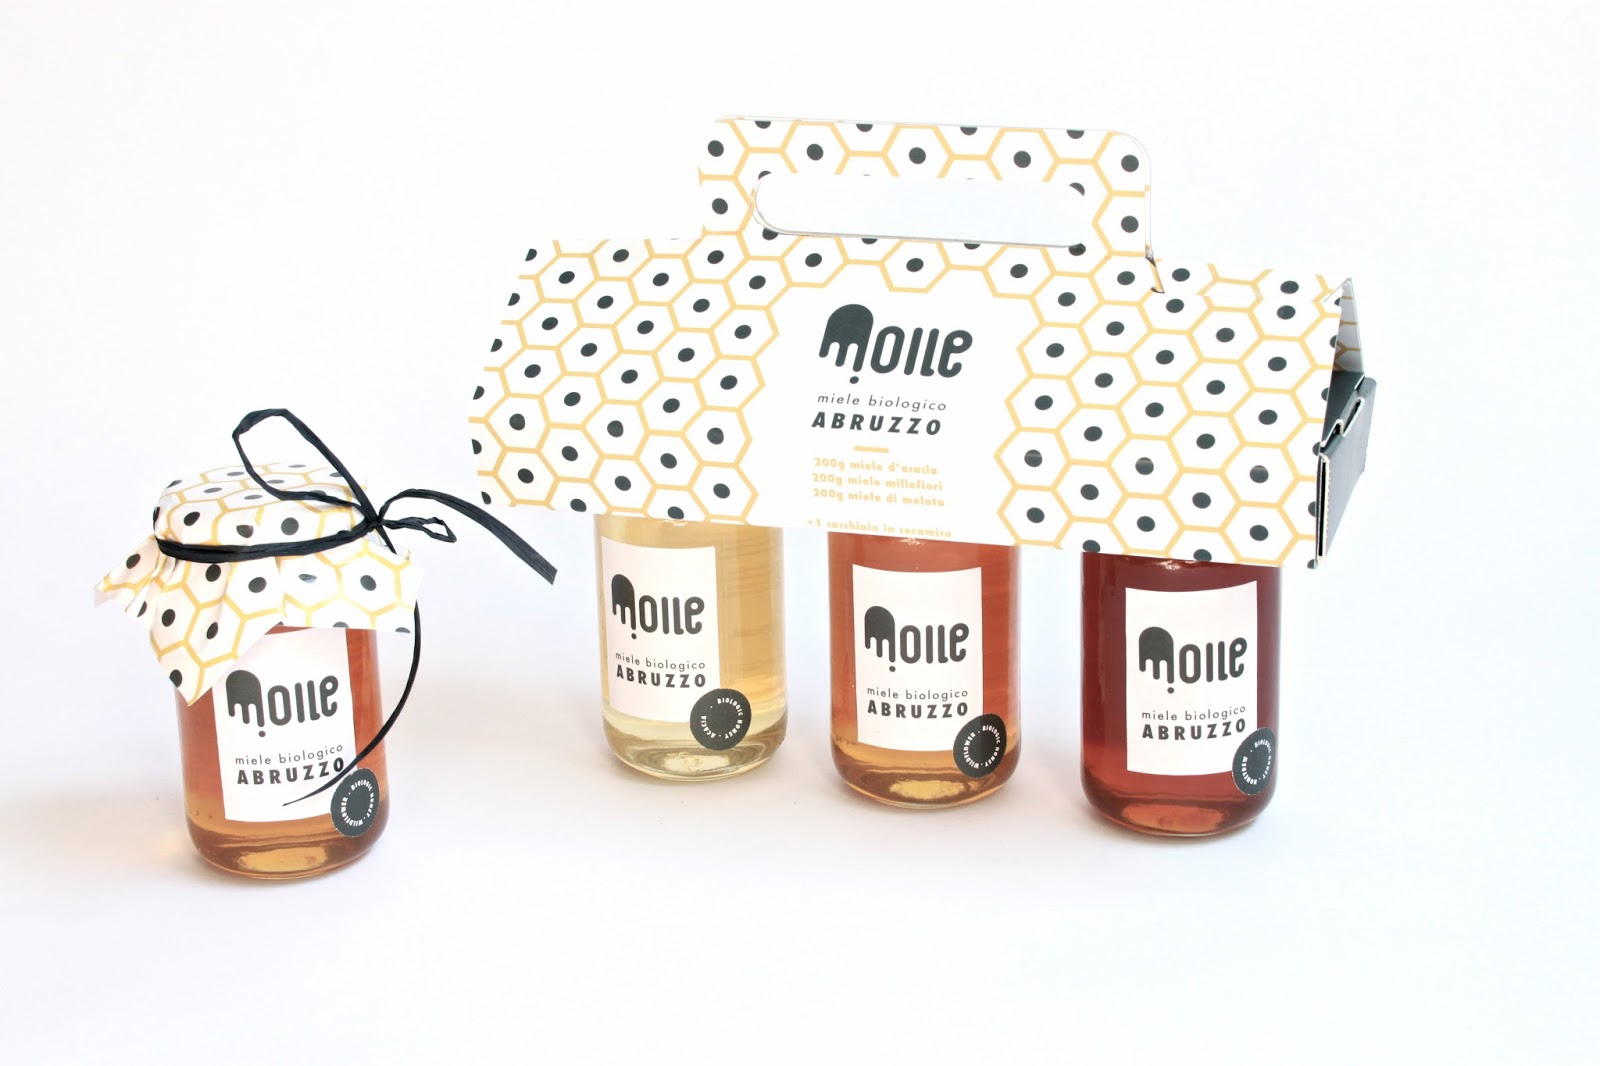 Moile Honey of Abruzzo Label Design